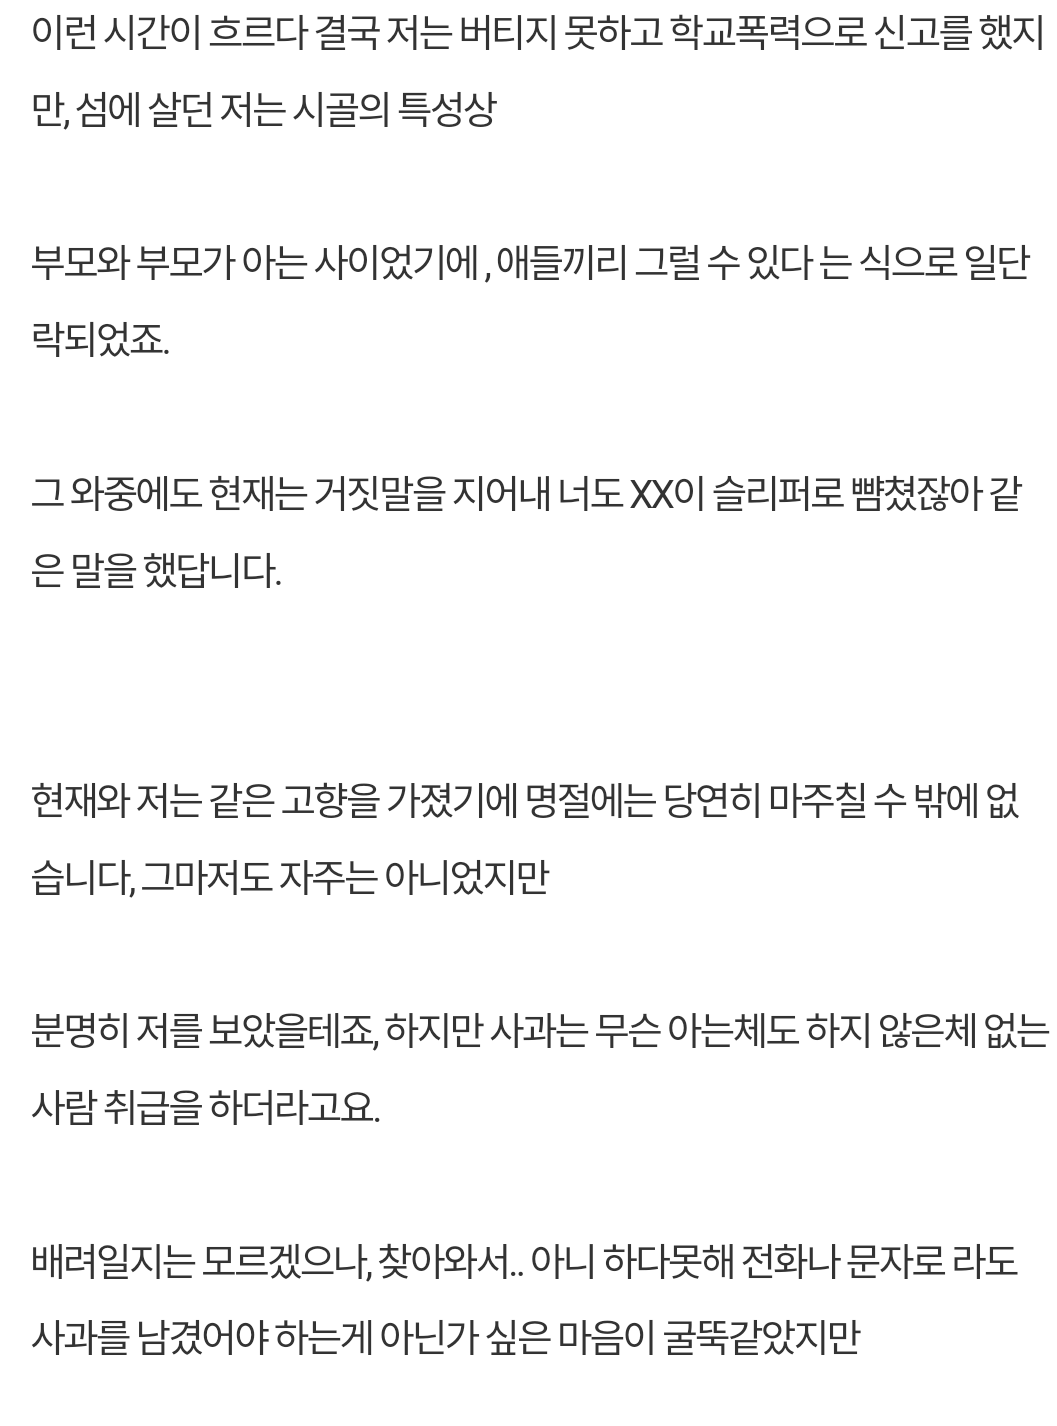 [정보/소식] 피크타임에 출연중인 팀 24시 소속 김현재를 공론화합니다 (캡쳐) | 인스티즈